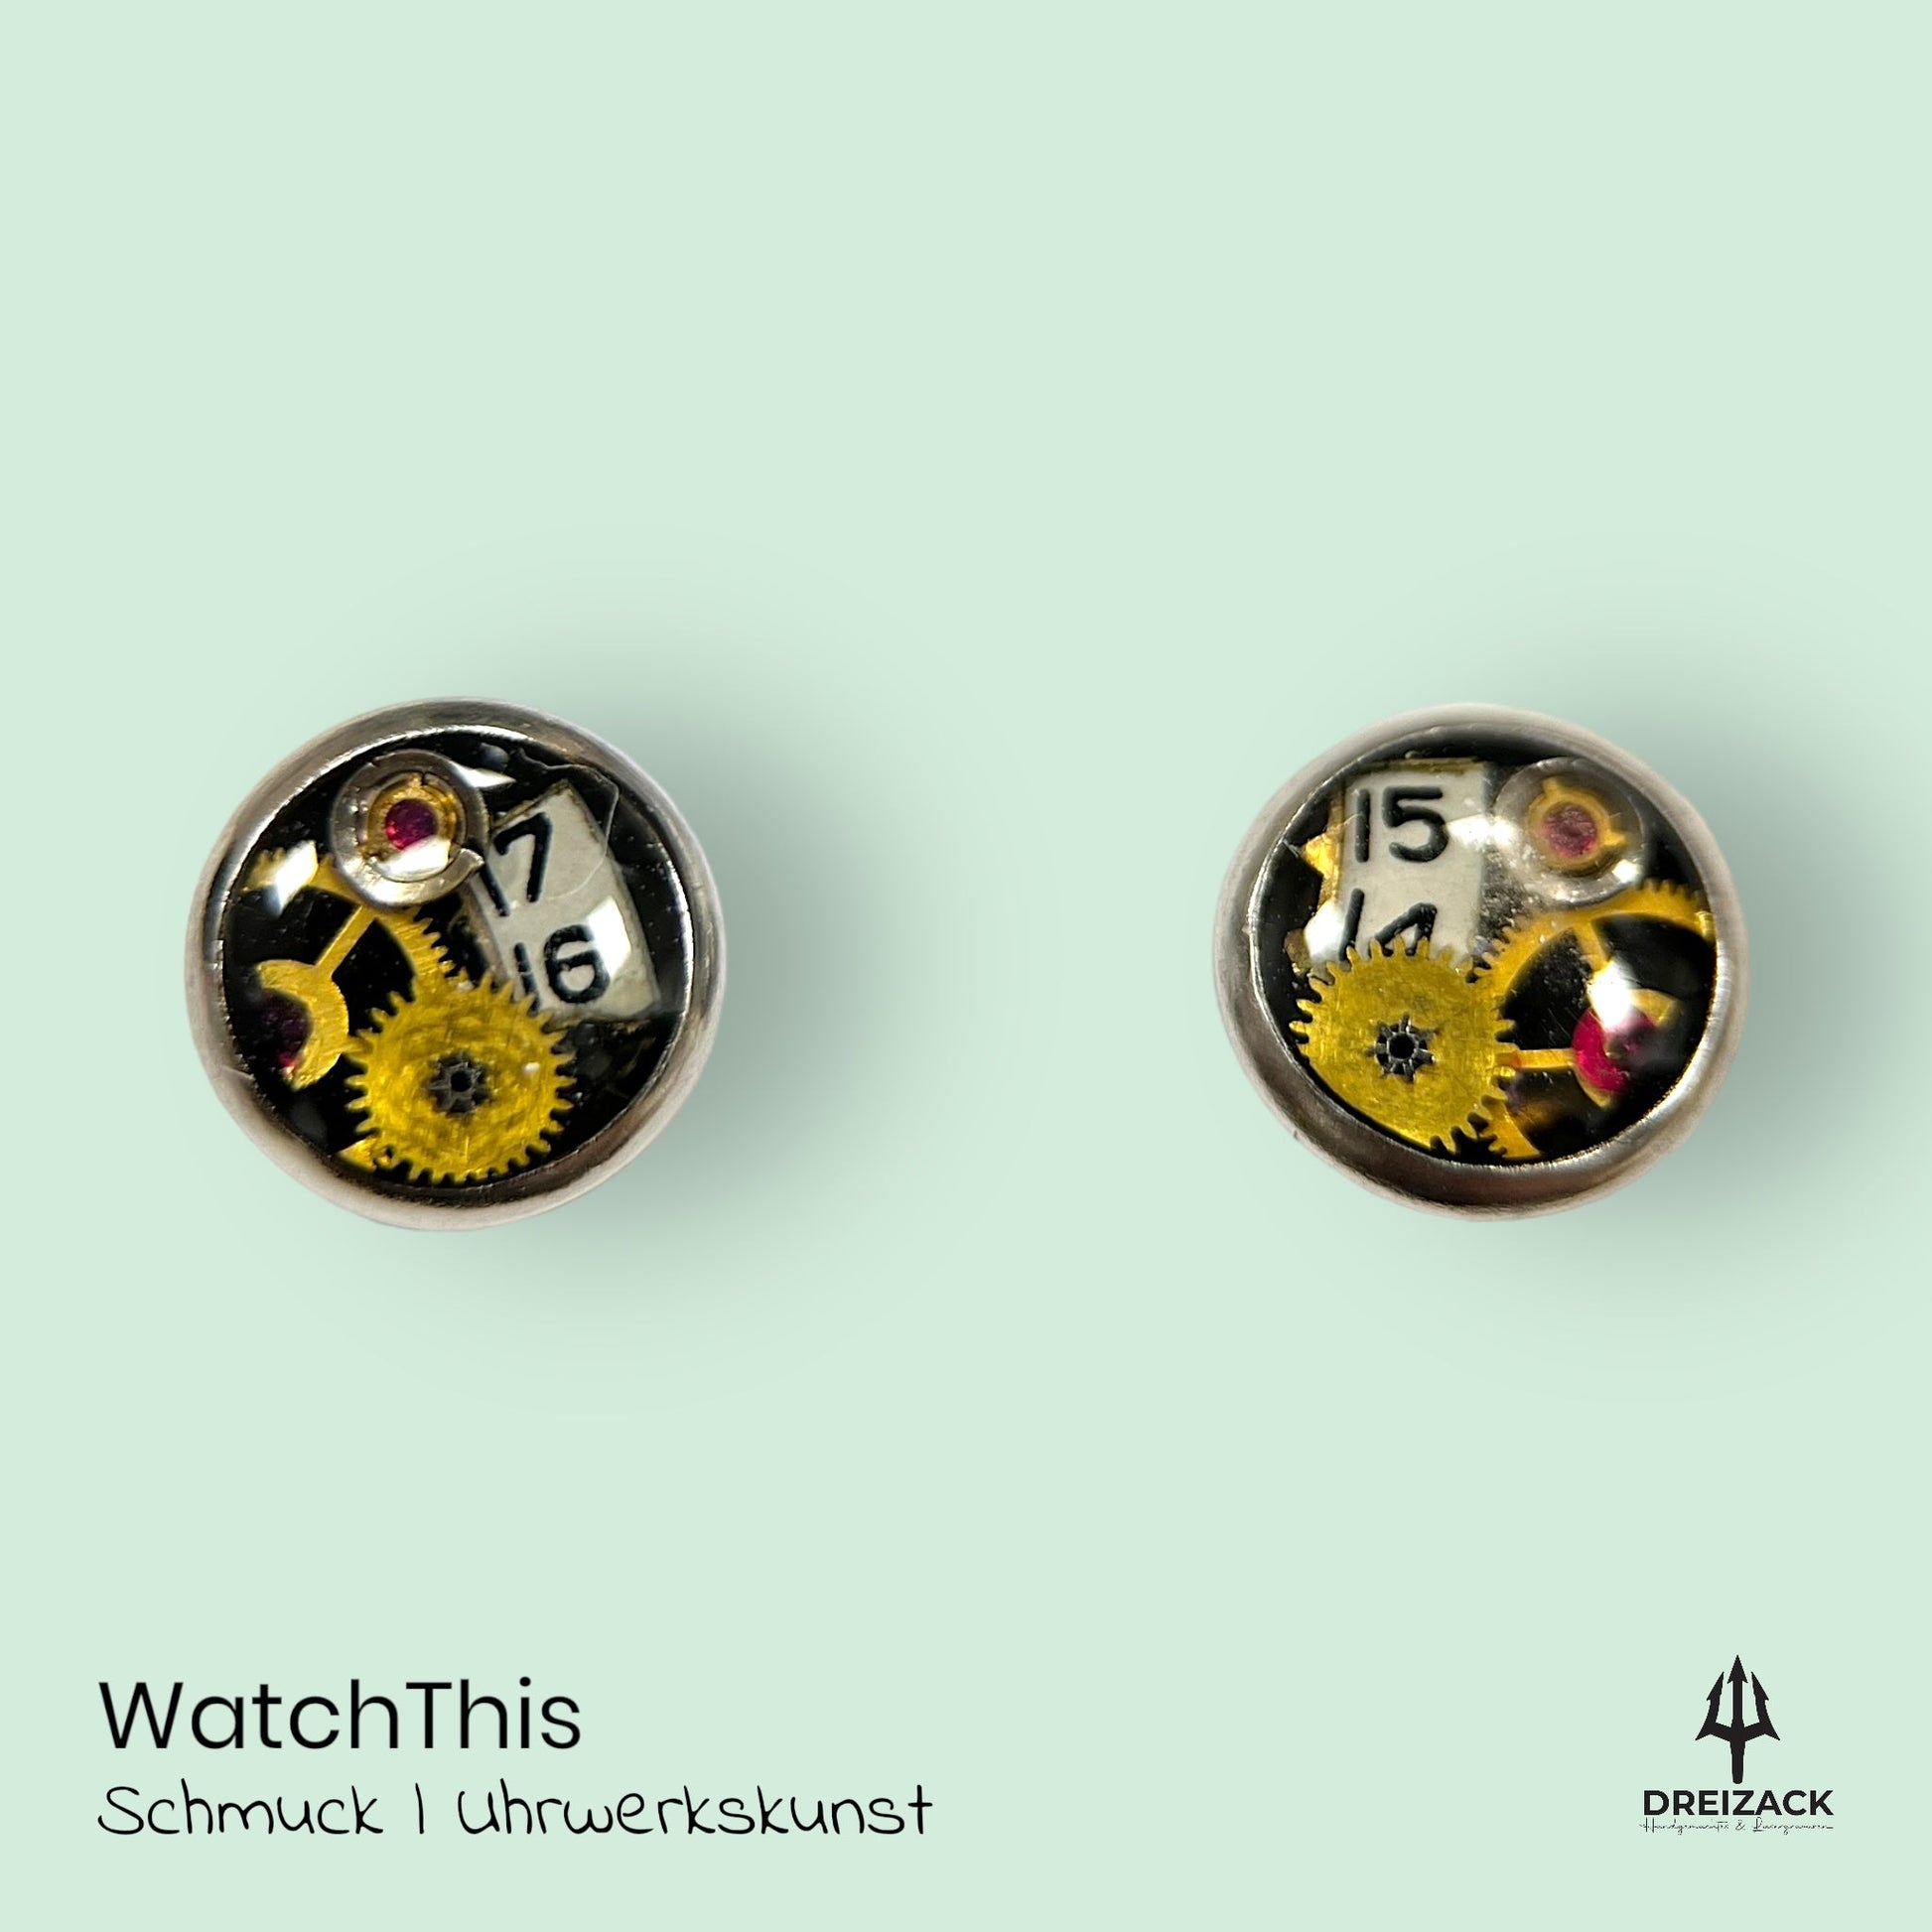 Ohrstecker von WatchThis - Zeitlose Eleganz aus Uhrwerken 6mm | Orion Schmuck WatchThis oesterreich handgemachte geschenke in wien